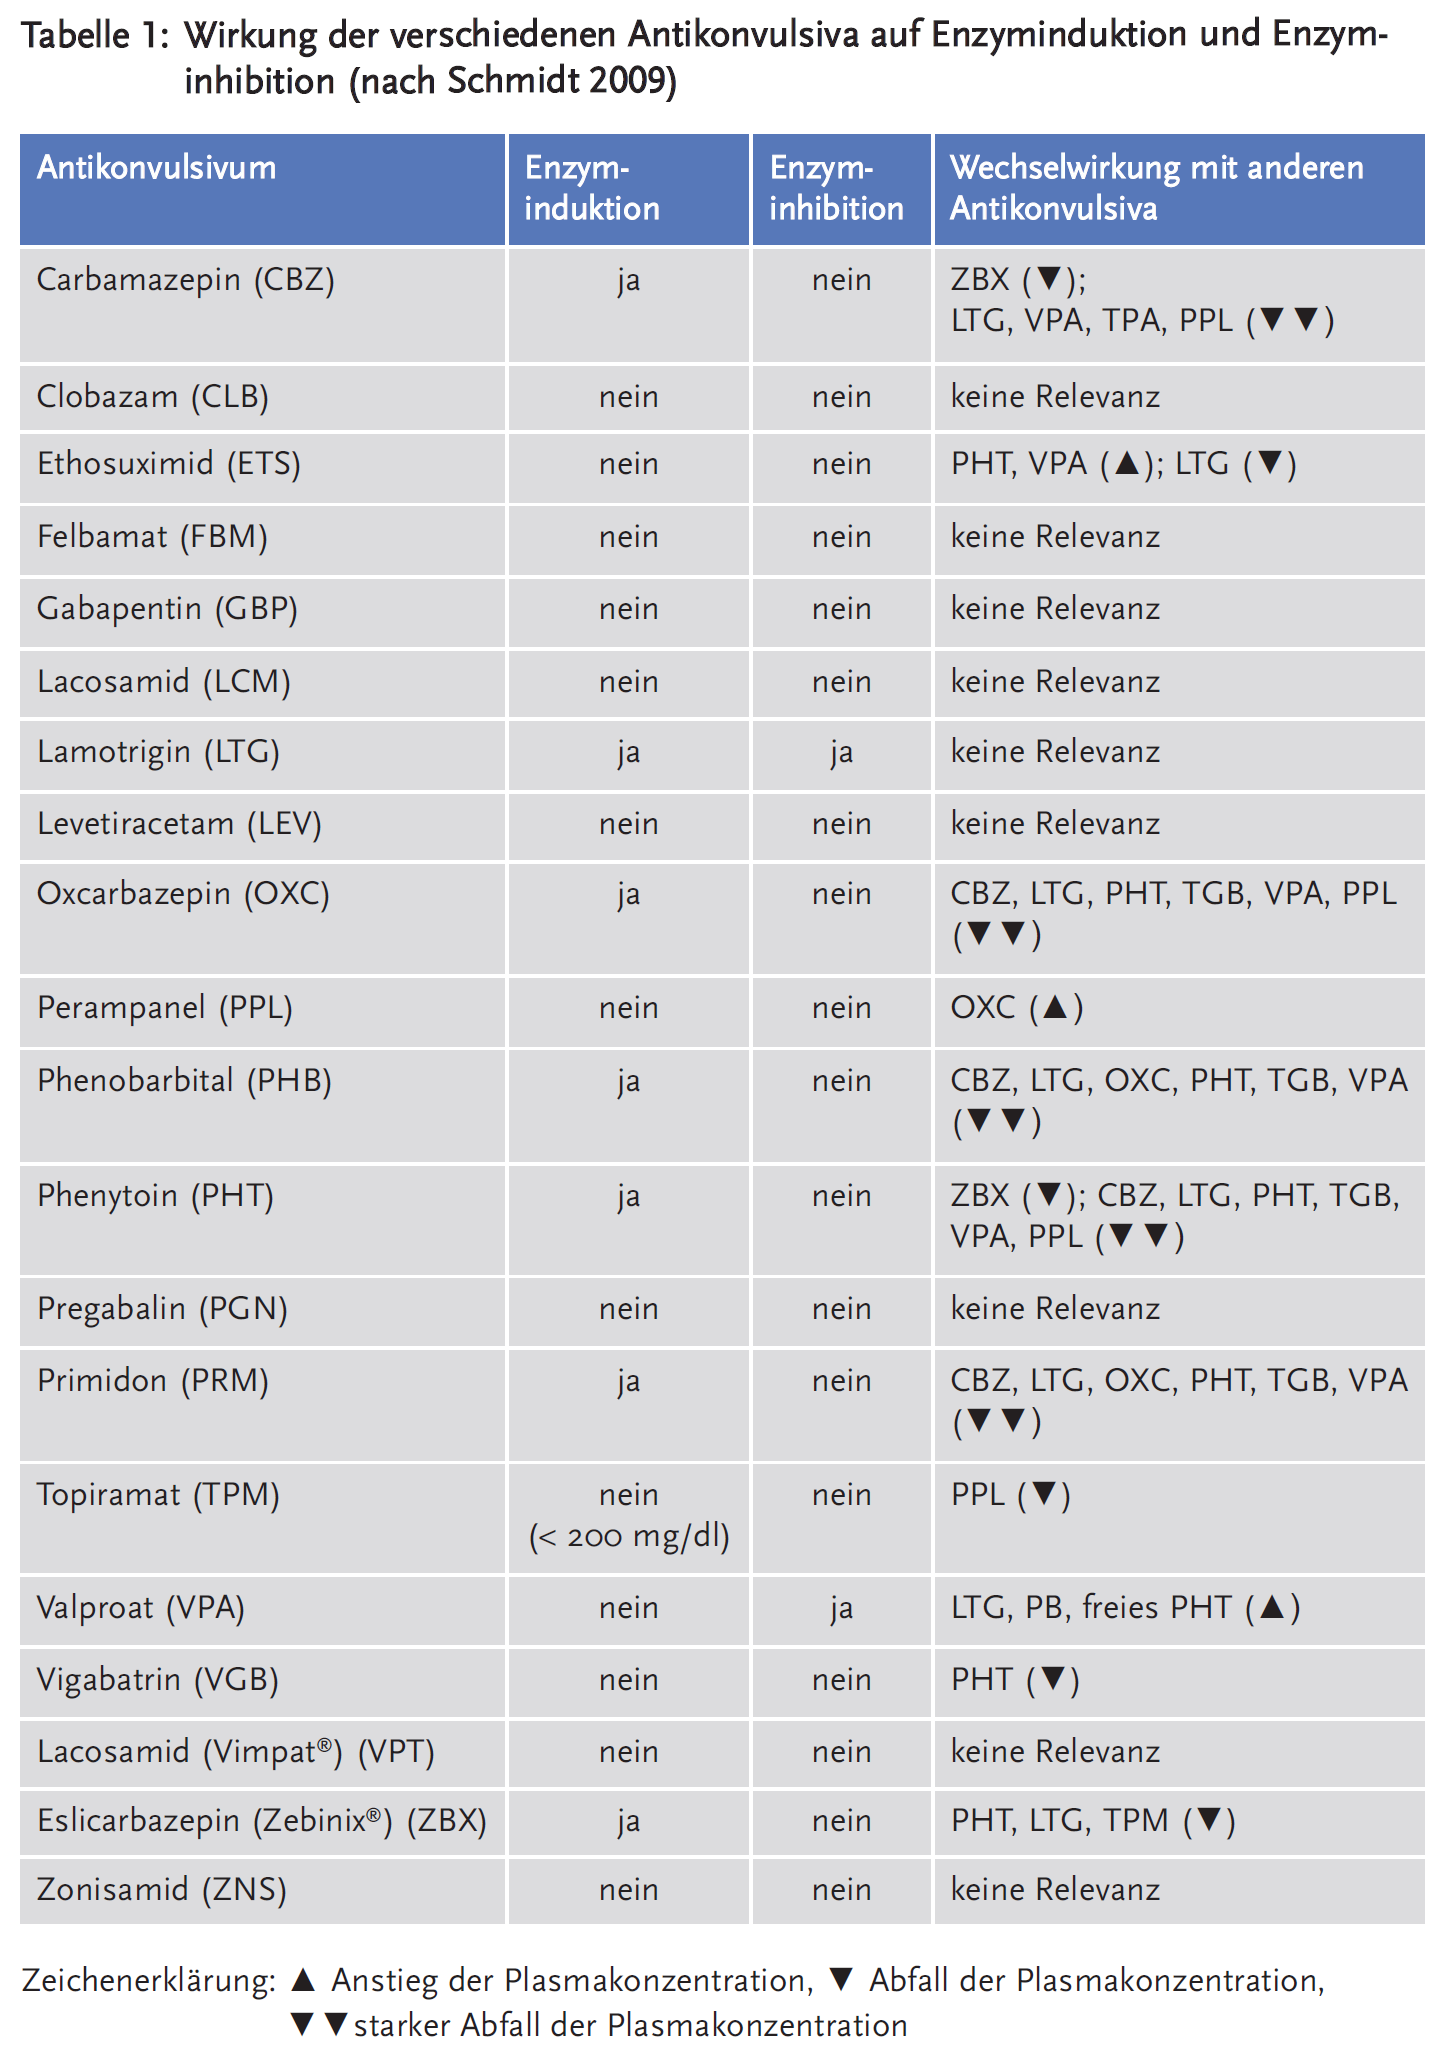 Tabelle 1: Wirkung der verschiedenen Antikonvulsiva auf Enzyminduktion und Enzyminhibition (nach Schmidt 2009)